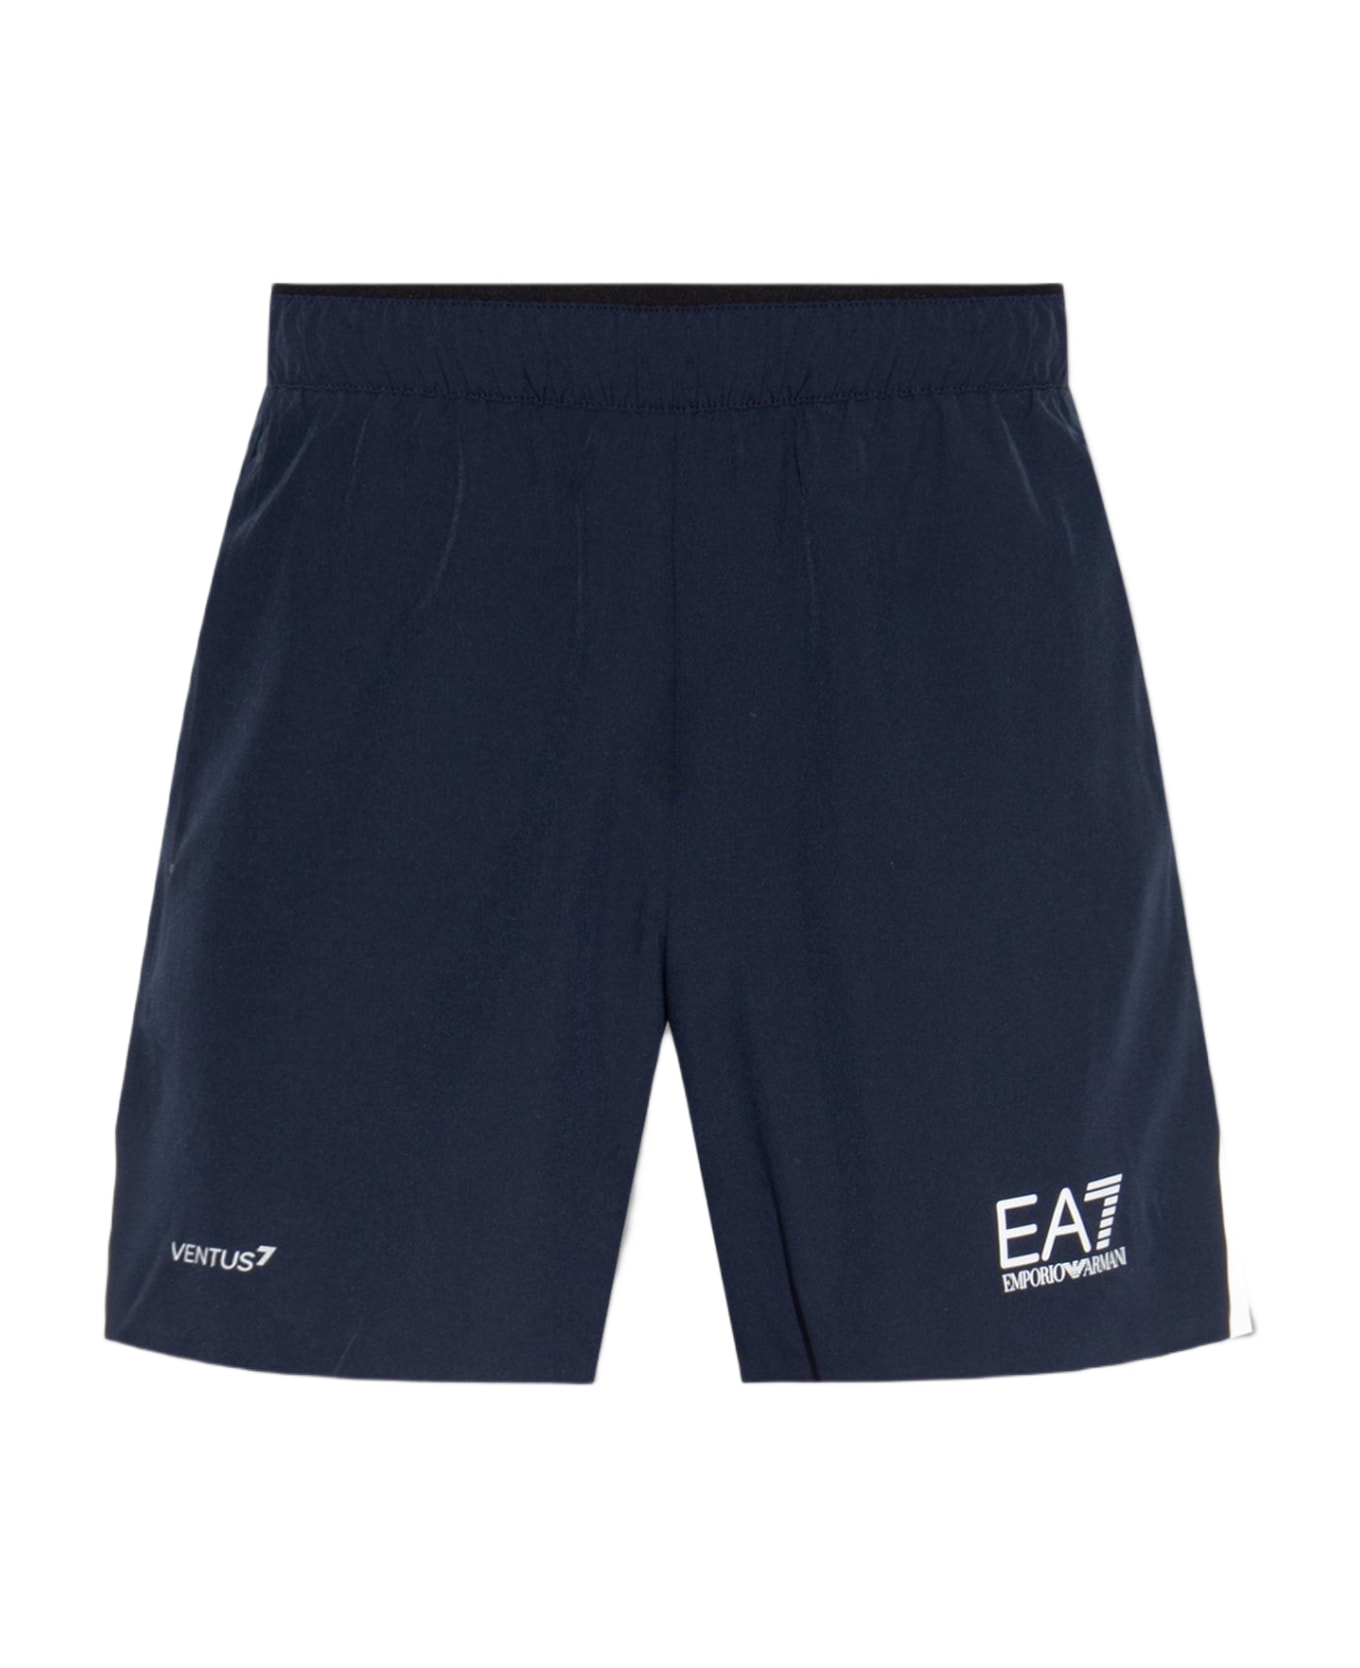 EA7 Emporio Armani Printed Shorts - Blue ショートパンツ